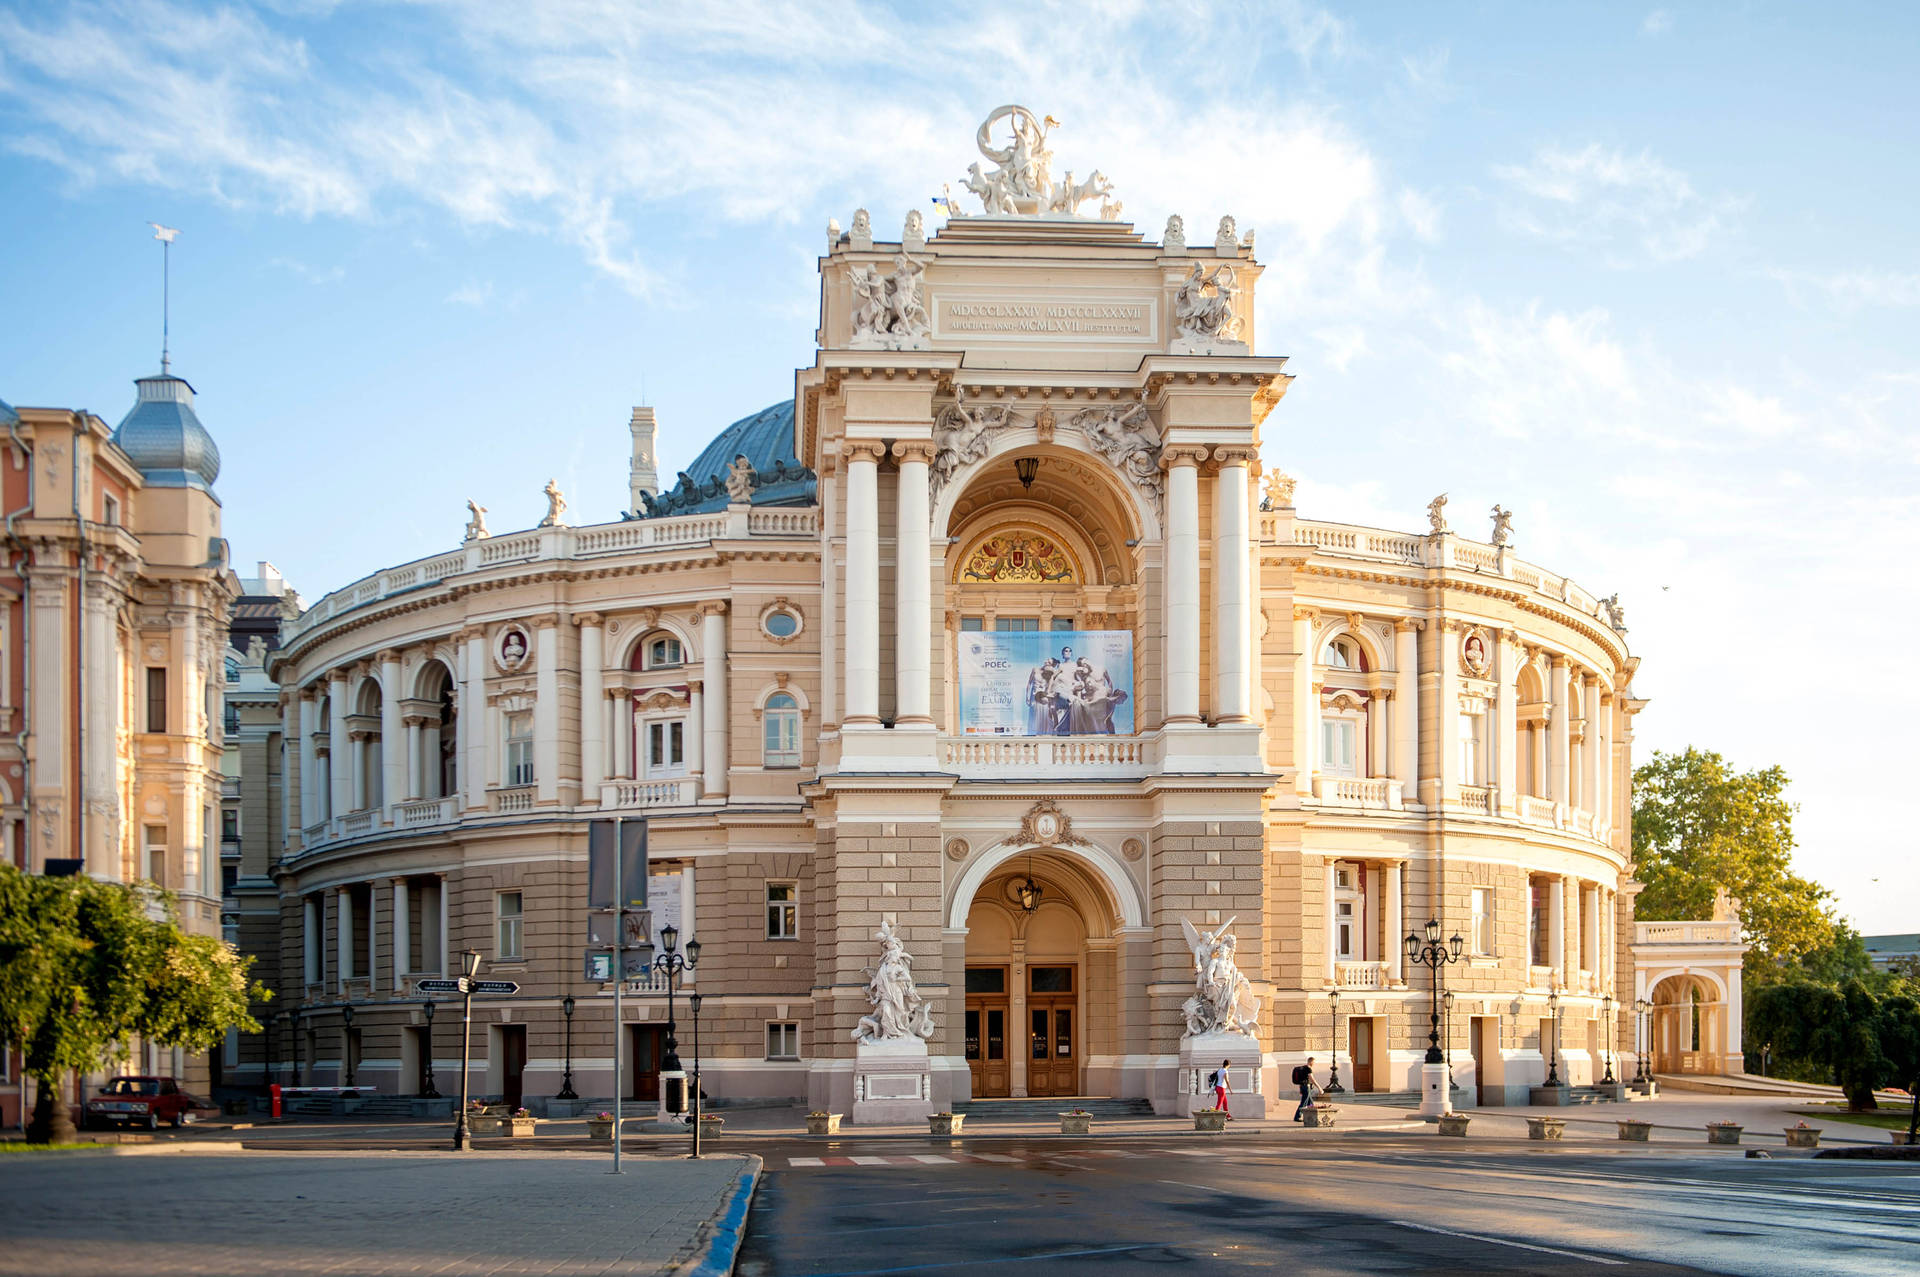 Caption: Majestic Opera House In Ukraine